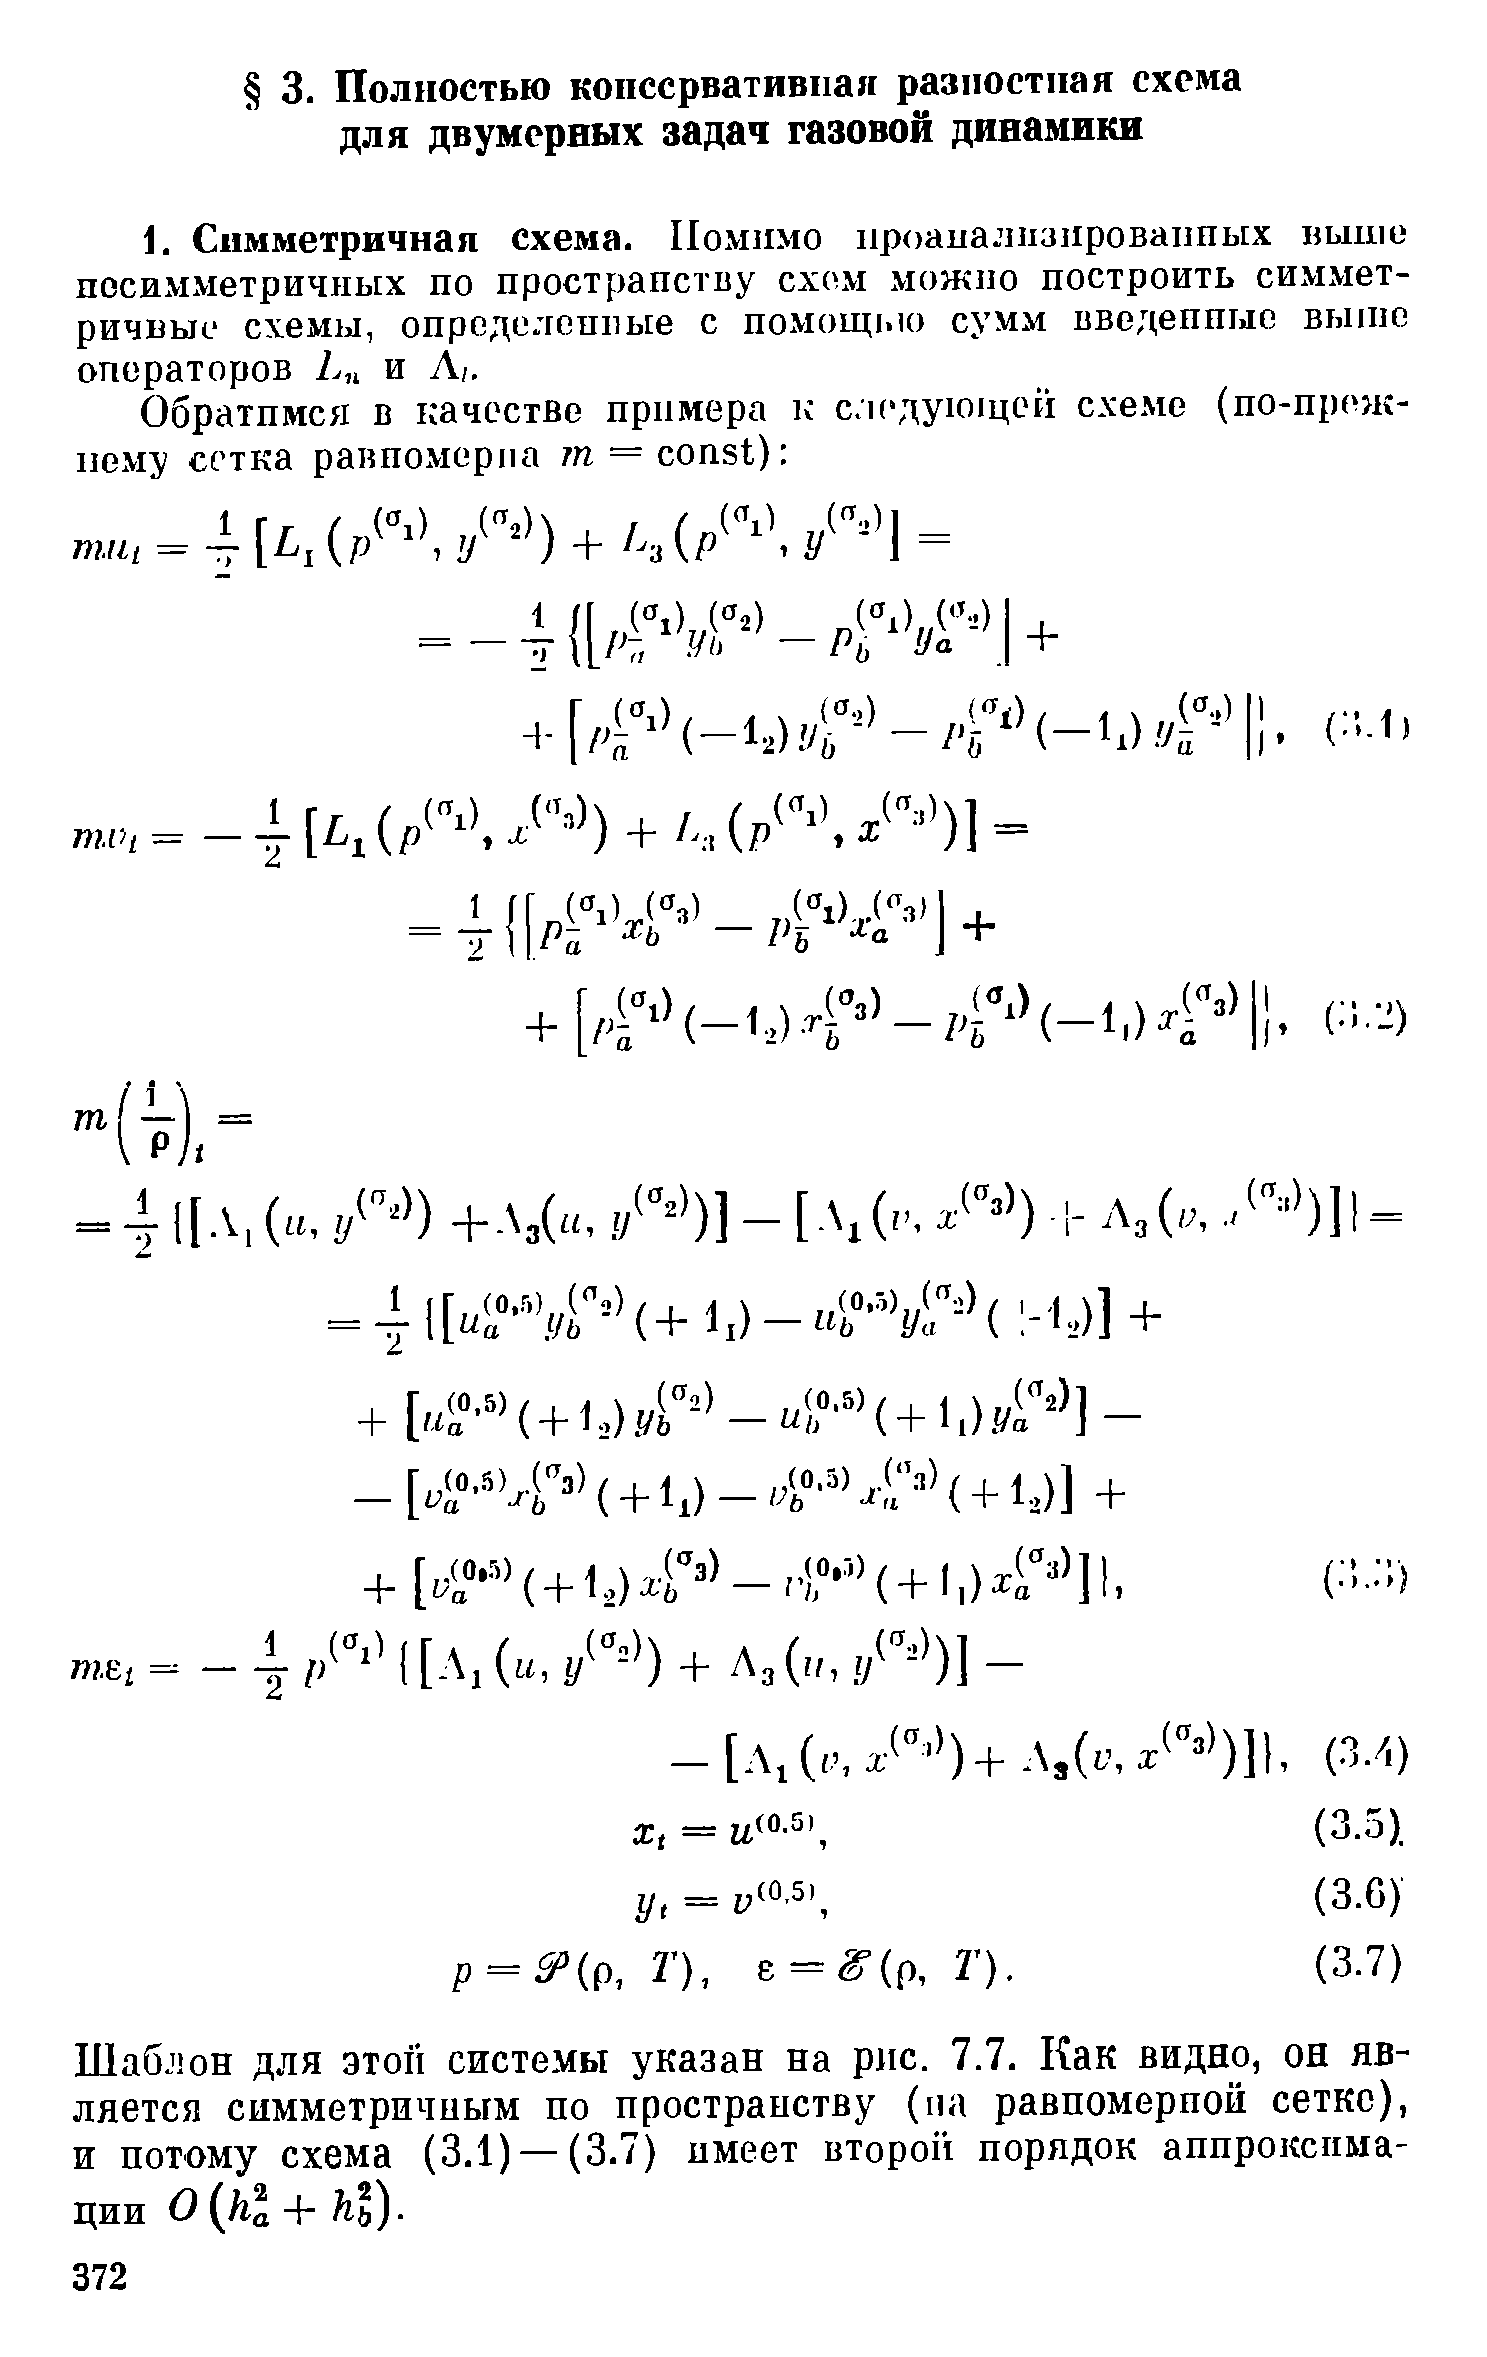 Шаблон для этой системы указан на рис. 7.7. Как видно, он является симметричным по пространству (па равномерной сетке), и потому схема (3.1) —(3.7) имеет второй порядок аппроксимации О -Ь кь).
